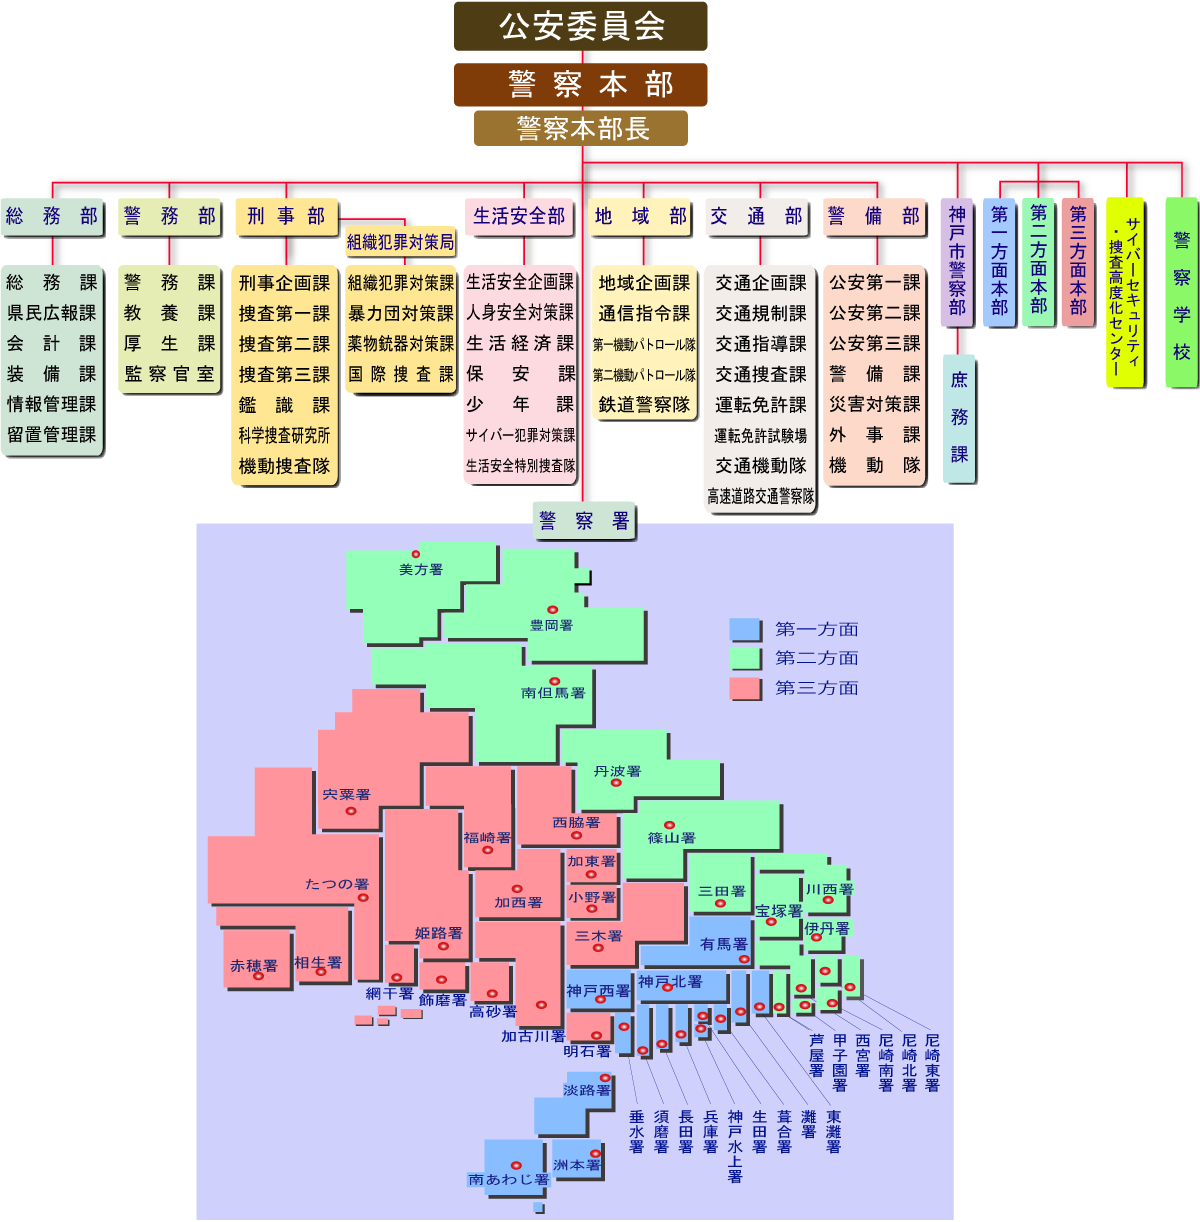 兵庫県警察の組織図